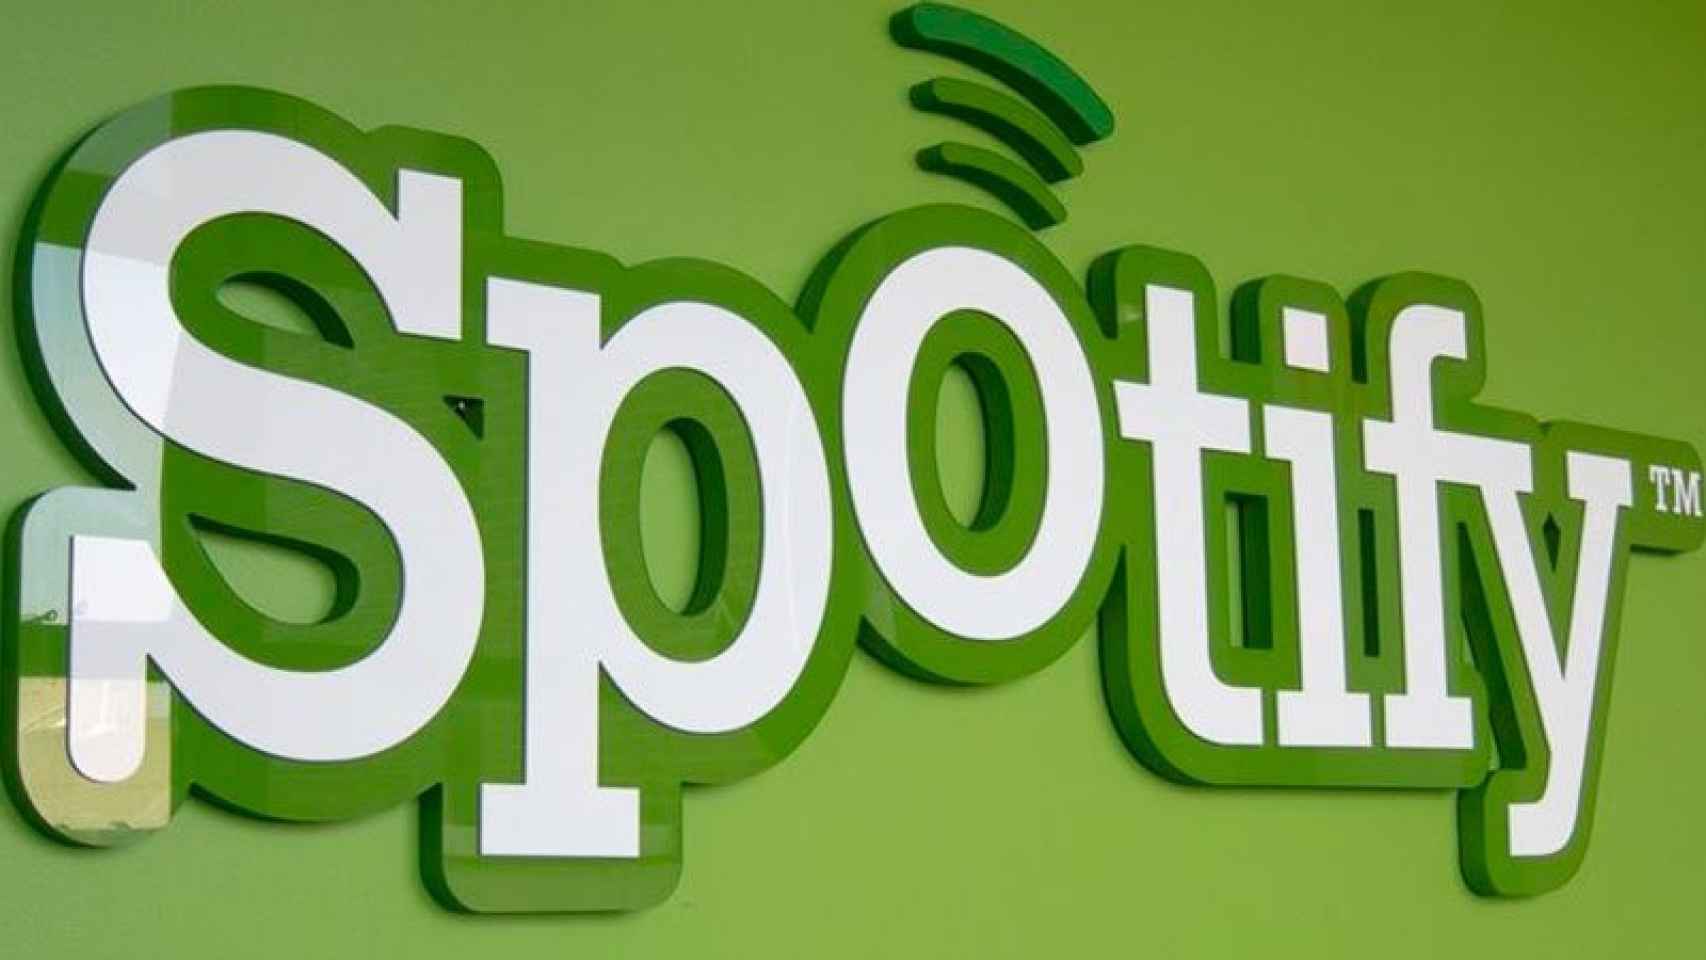 Spotify se ha convertido en una de las plataformas musicales más conocidas.